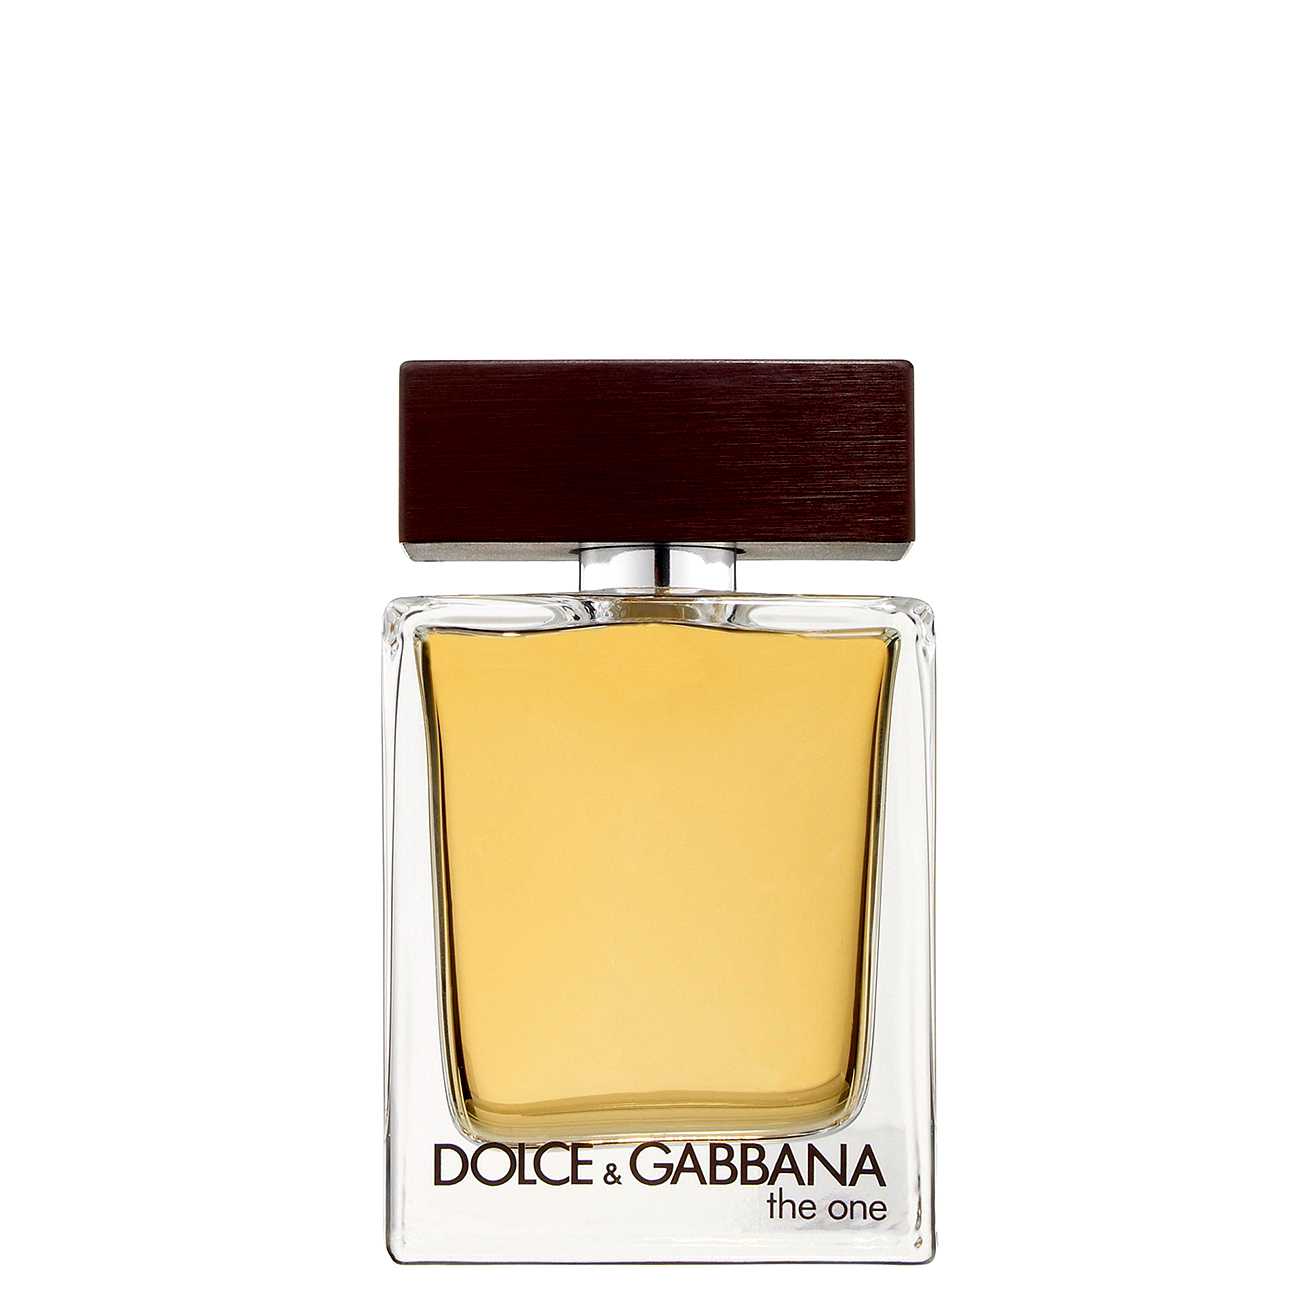 THE ONE original Dolce & Gabbana bestvalue